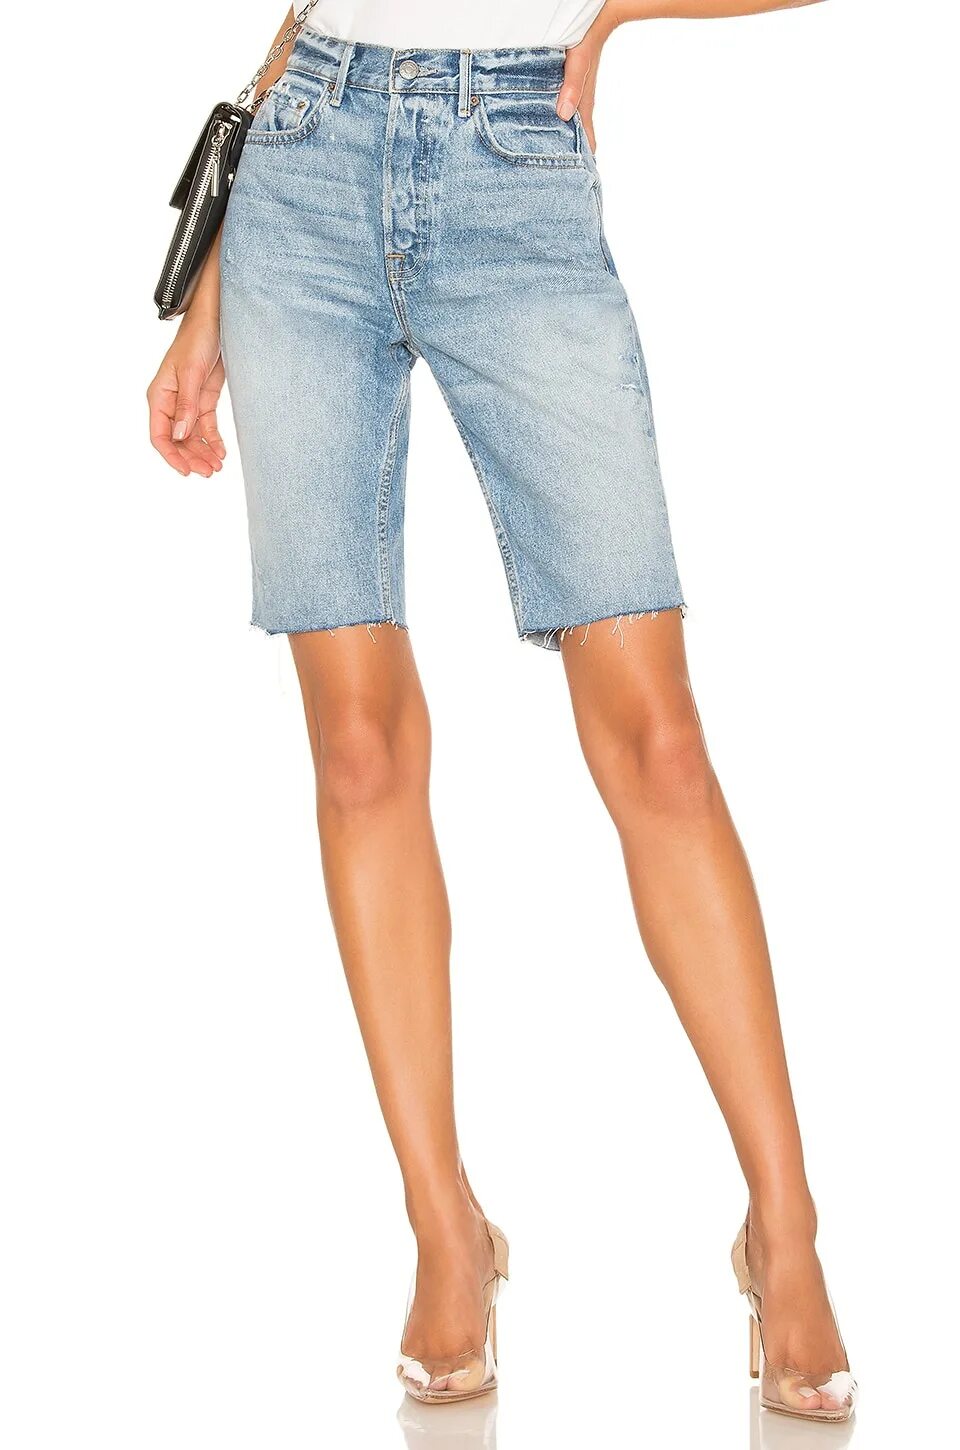 Удлиненные джинсовые шорты. Шорты джинсовые женские длинные. Джинсовые шорты длинные широкие. Обтянутые удлиненные шорты.